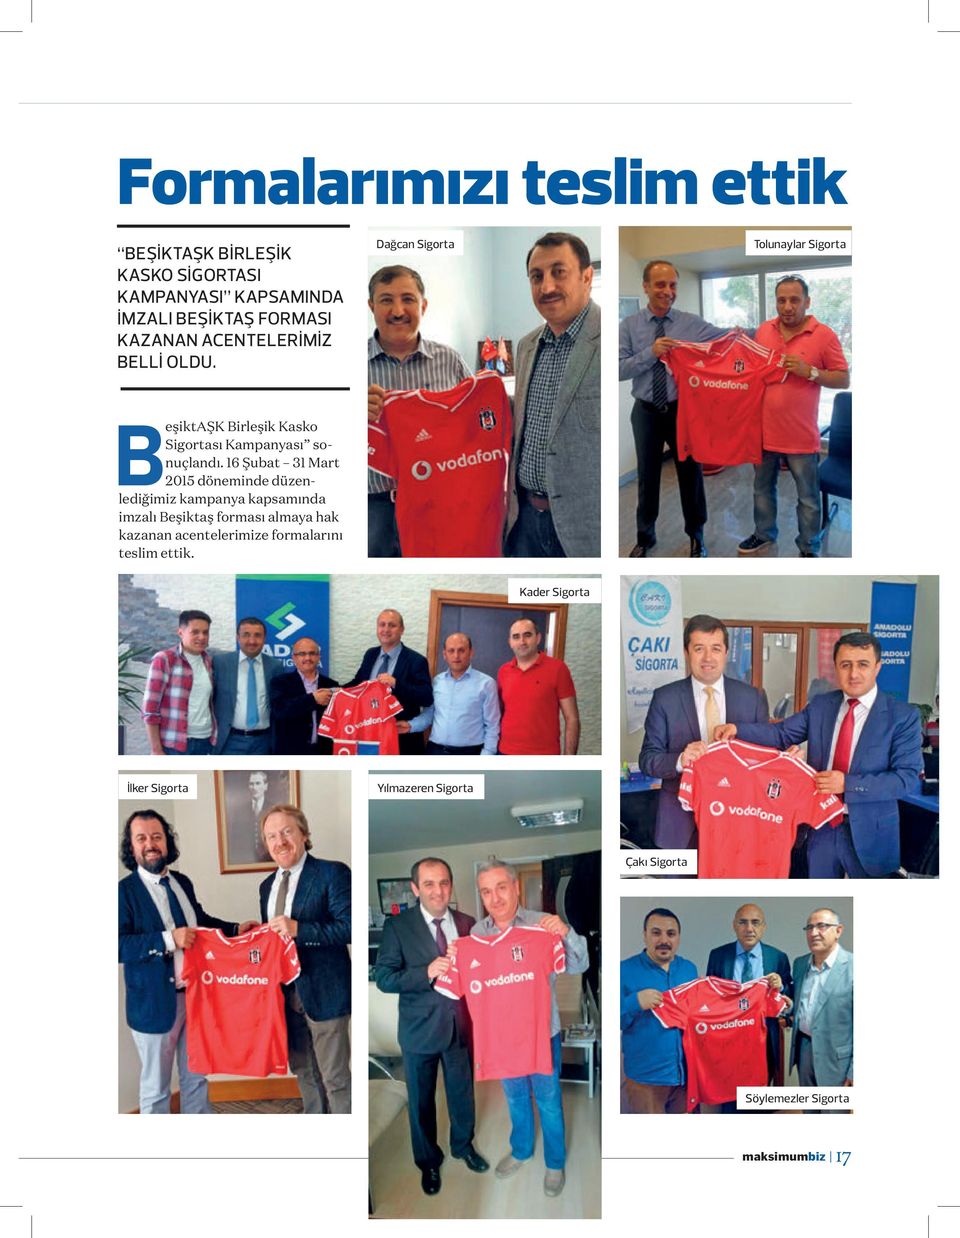 16 Şubat 31 Mart 2015 döneminde düzenlediğimiz kampanya kapsamında imzalı Beşiktaş forması almaya hak kazanan